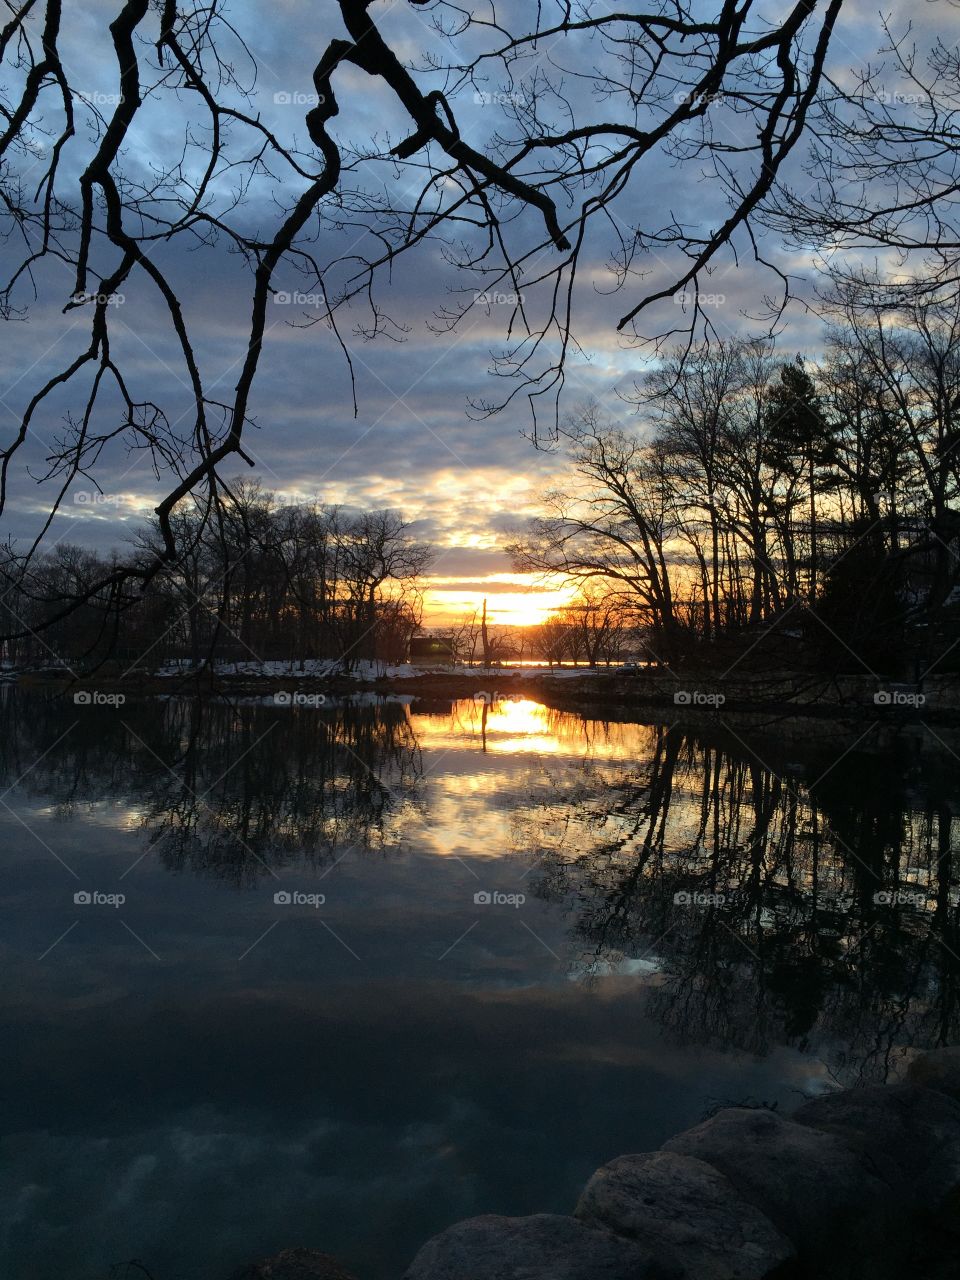 View of a lake at sunset